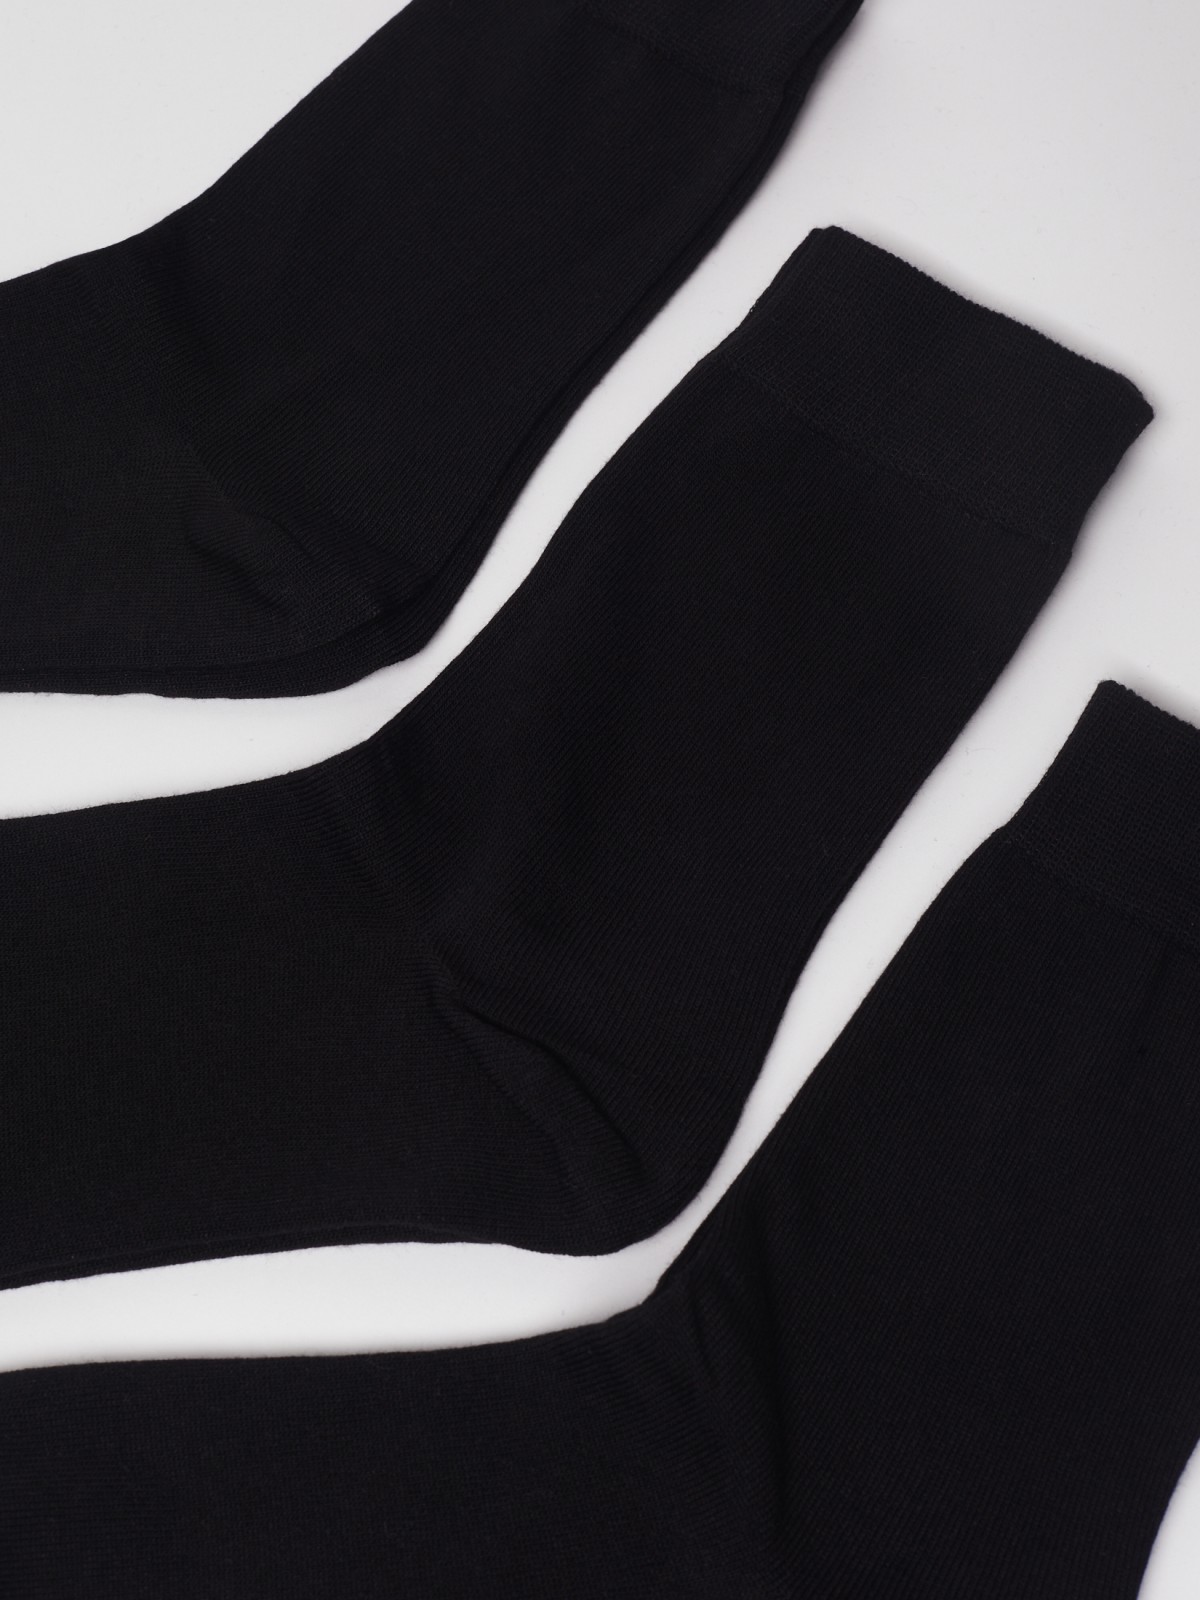 Набор высоких носков (3 пары в комплекте) zolla 01311995G015, цвет черный, размер 25-27 - фото 2